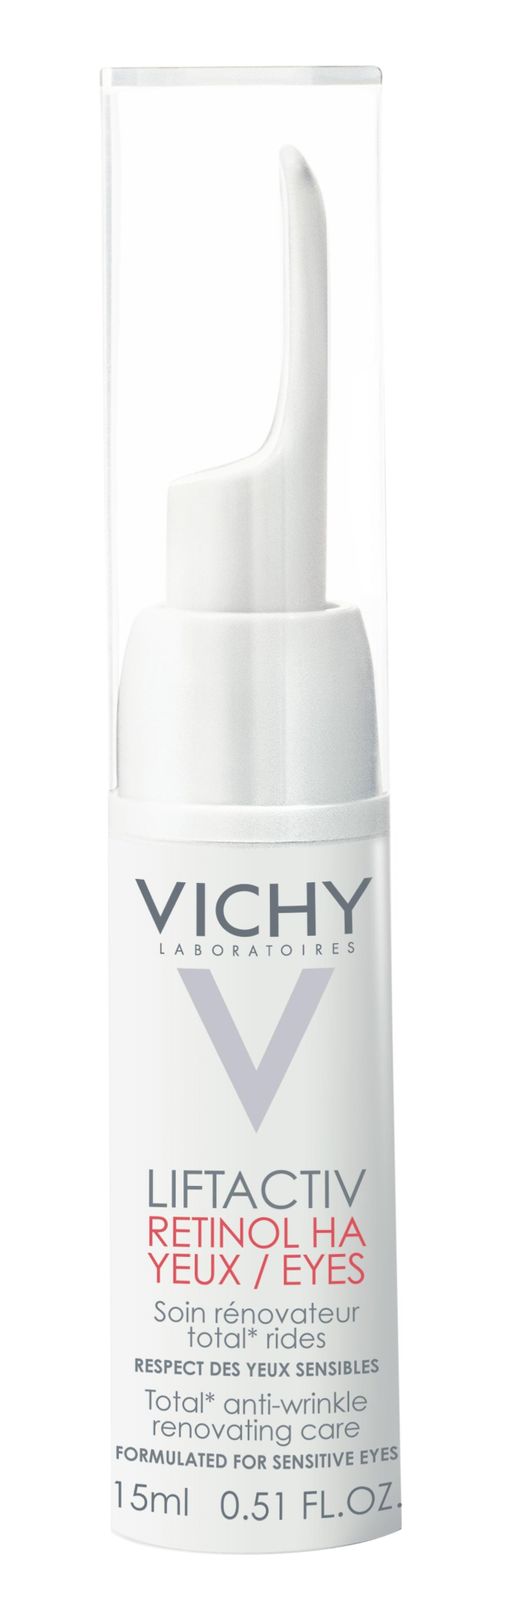 Vichy Liftactiv Retinol НА крем для контура глаз, крем для лица, 15 мл, 1 шт.